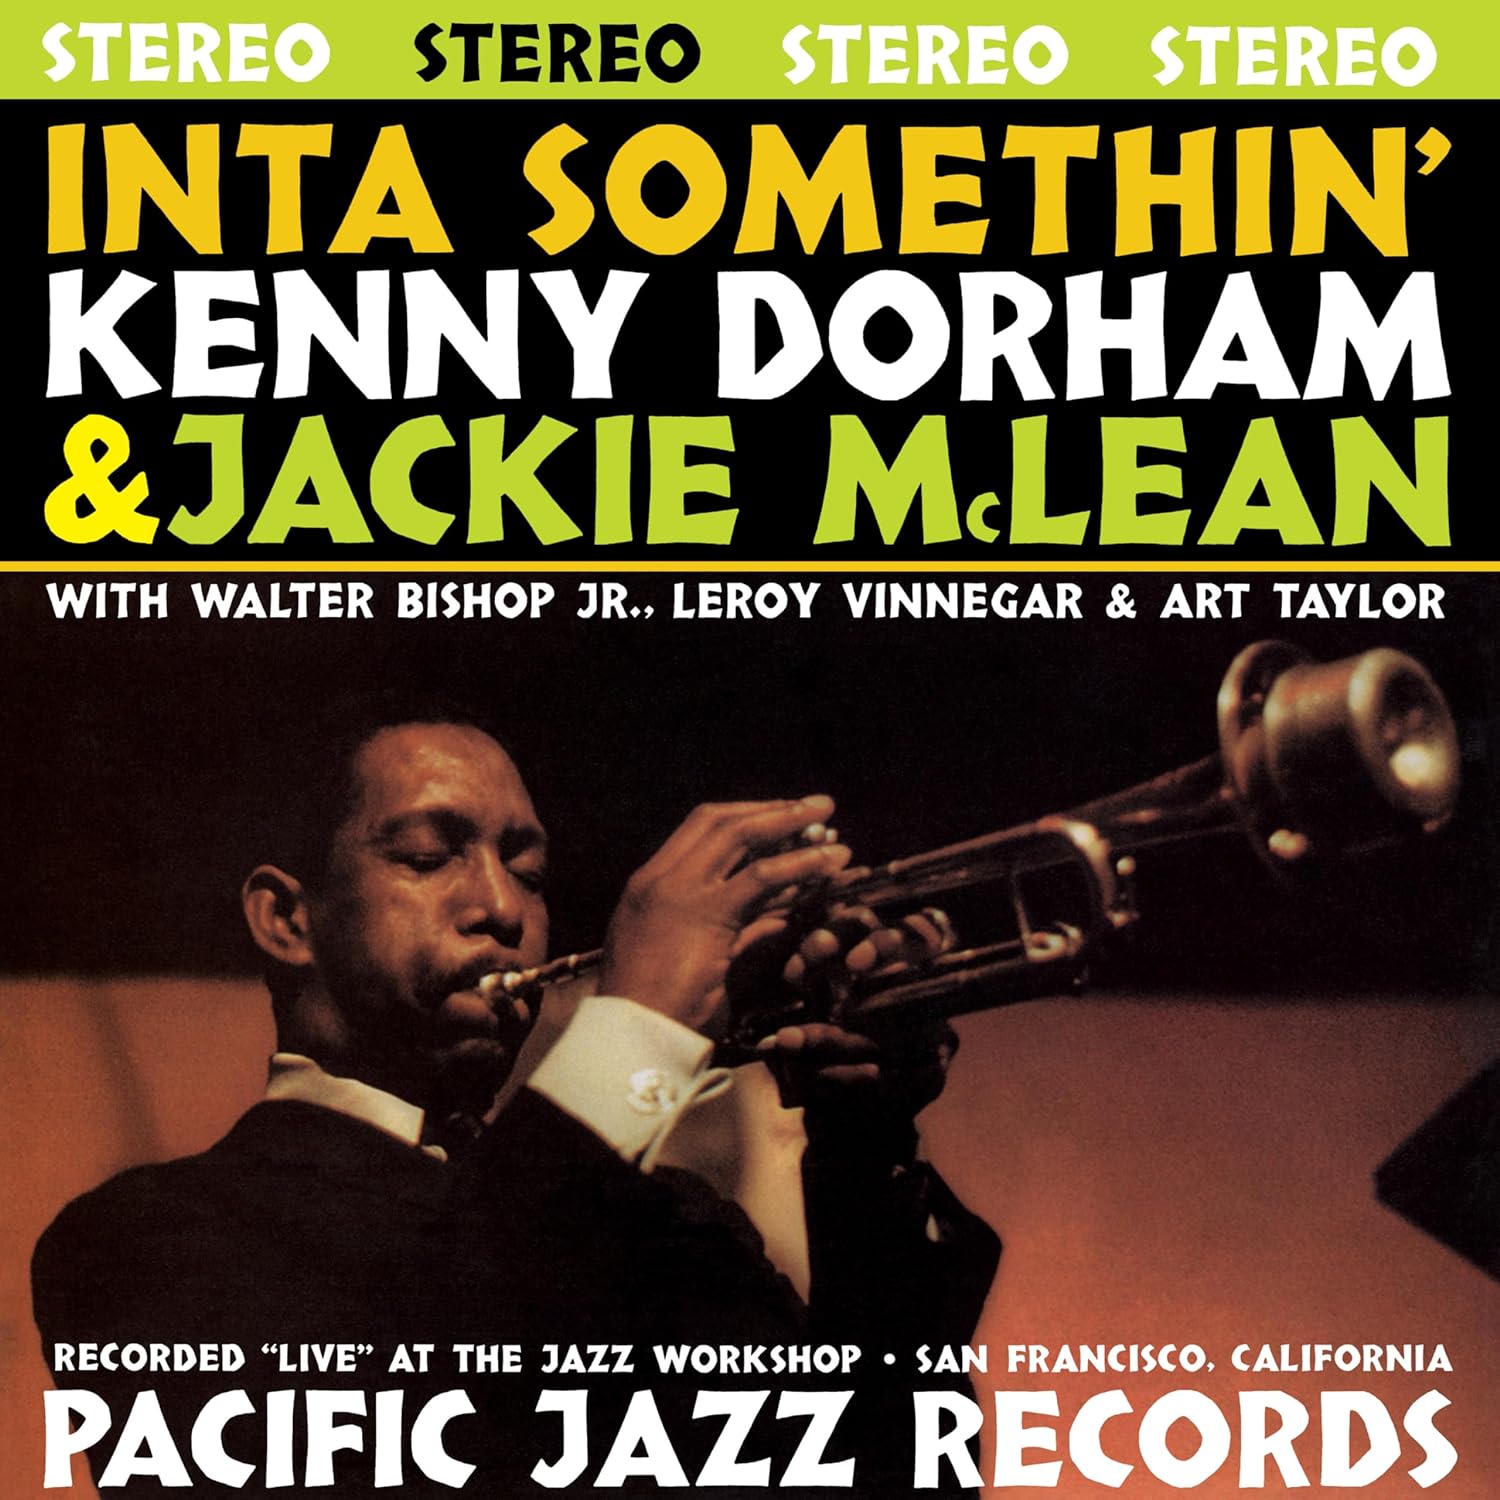 DORHAM KENNY & JACKIE MCLEAN – INTA SOMETHIN’ tone poet LP